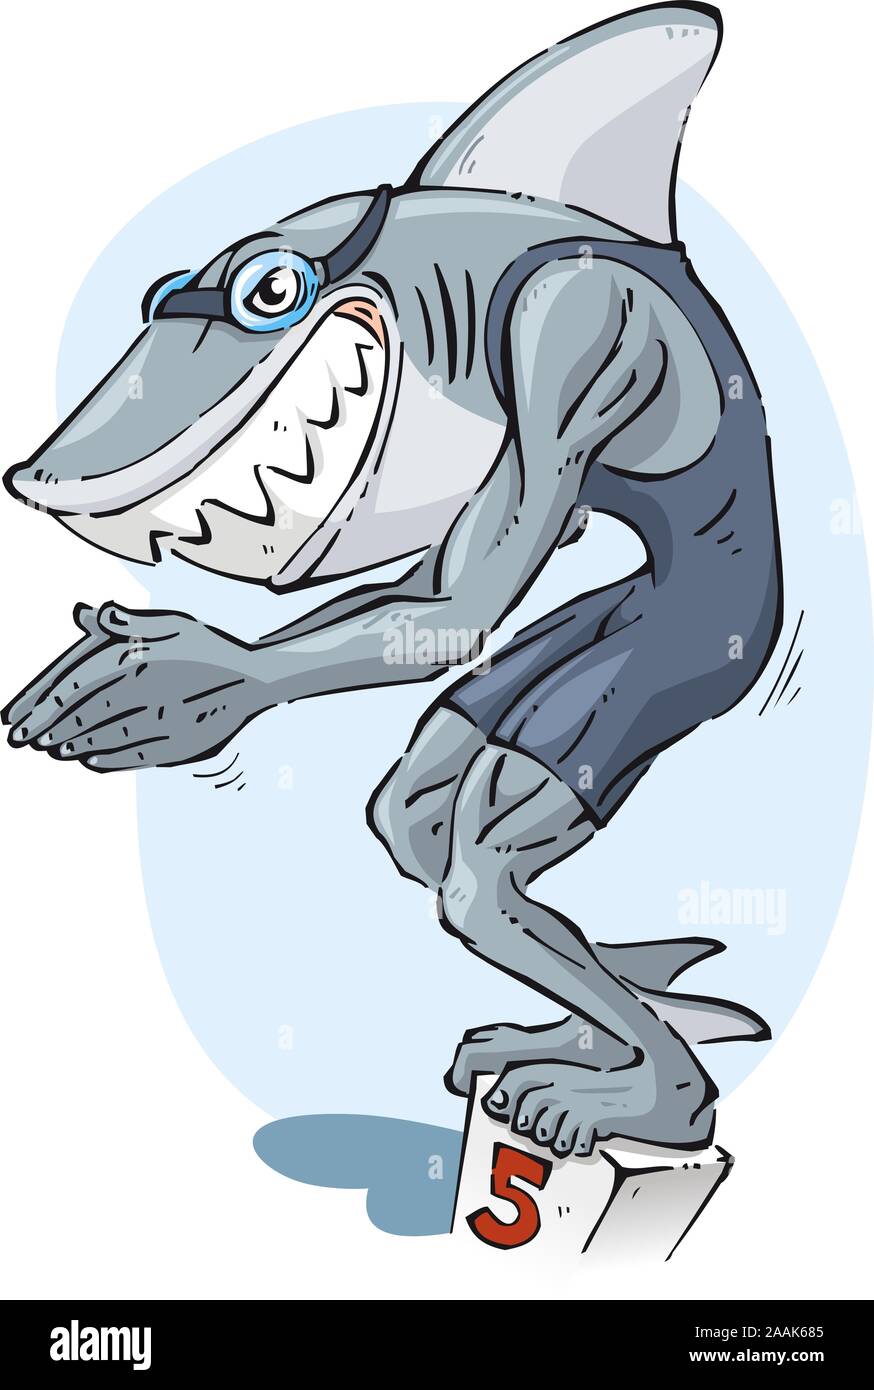 Shark swimmer illustration Stock Vector